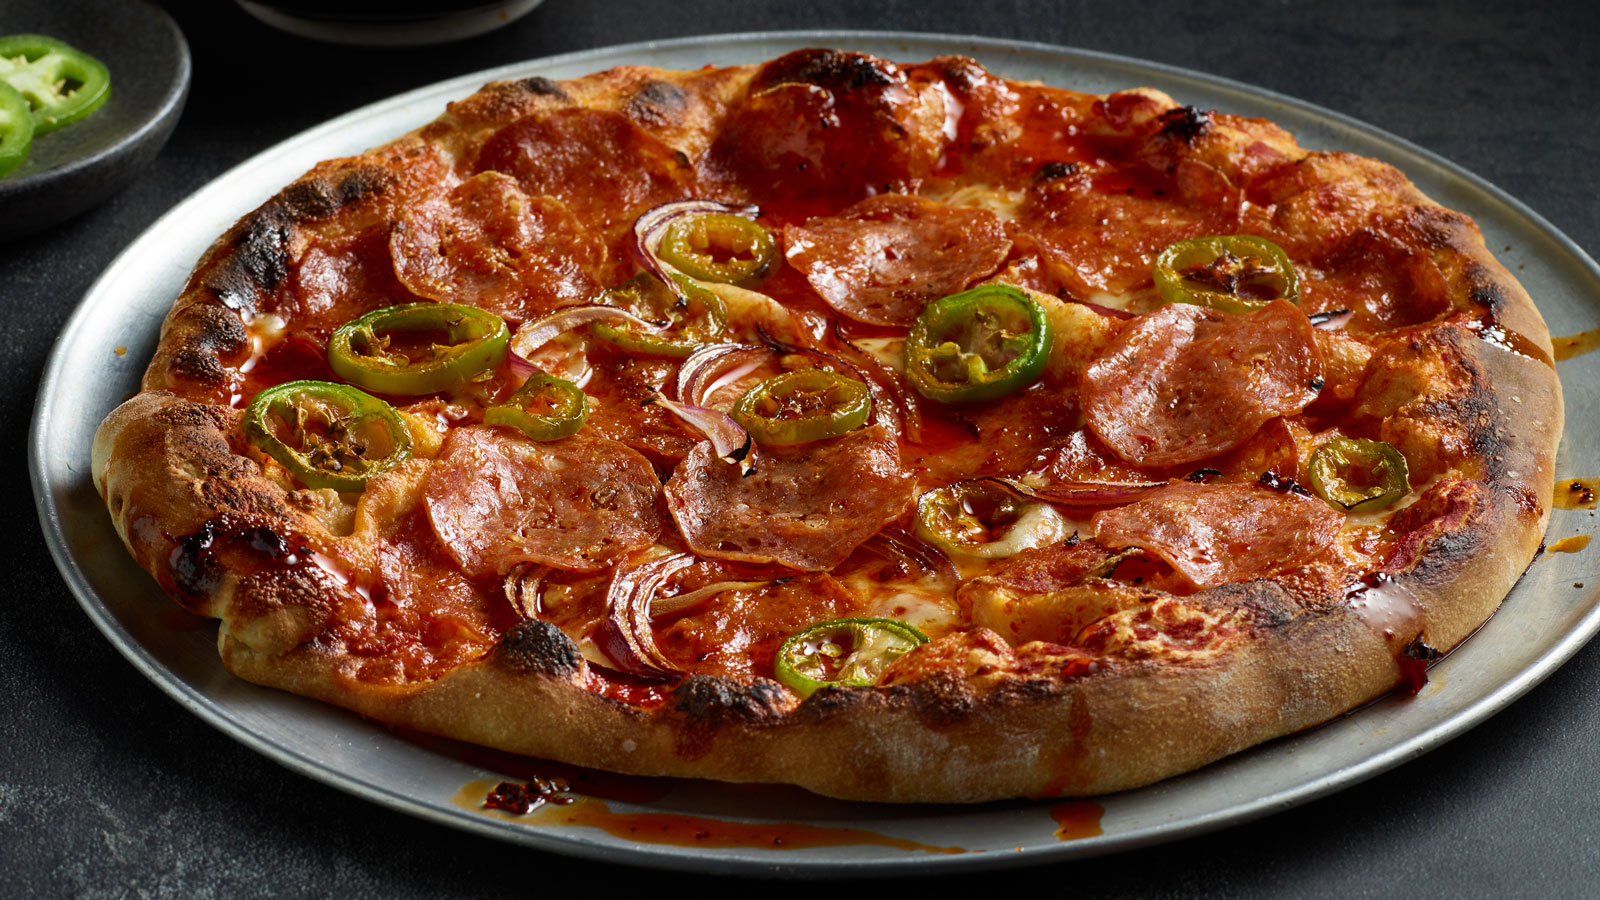 ik hou van pizza salami<3  Super pizza, Snacks saudaveis, Arte de